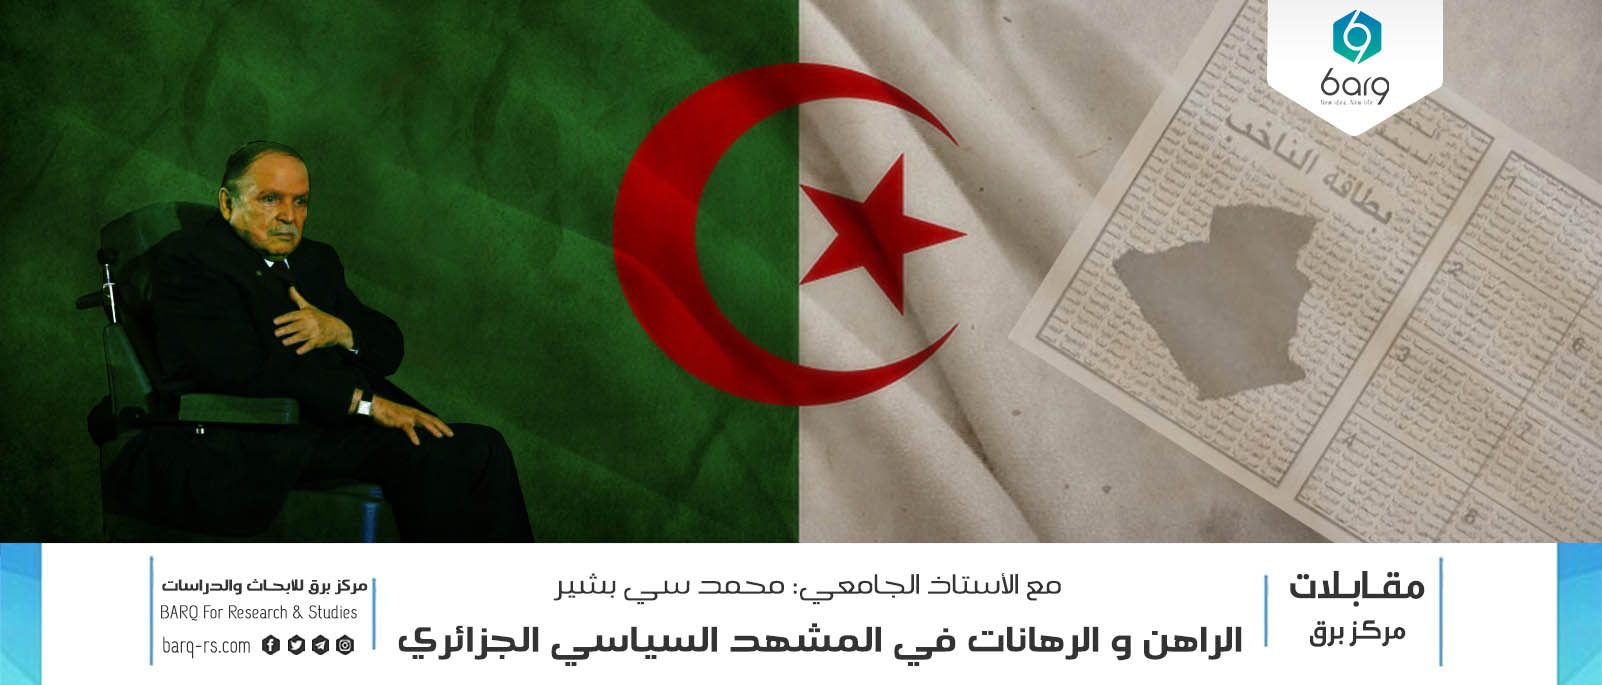 الراهن و الرهانات في المشهد السياسي الجزائري 2